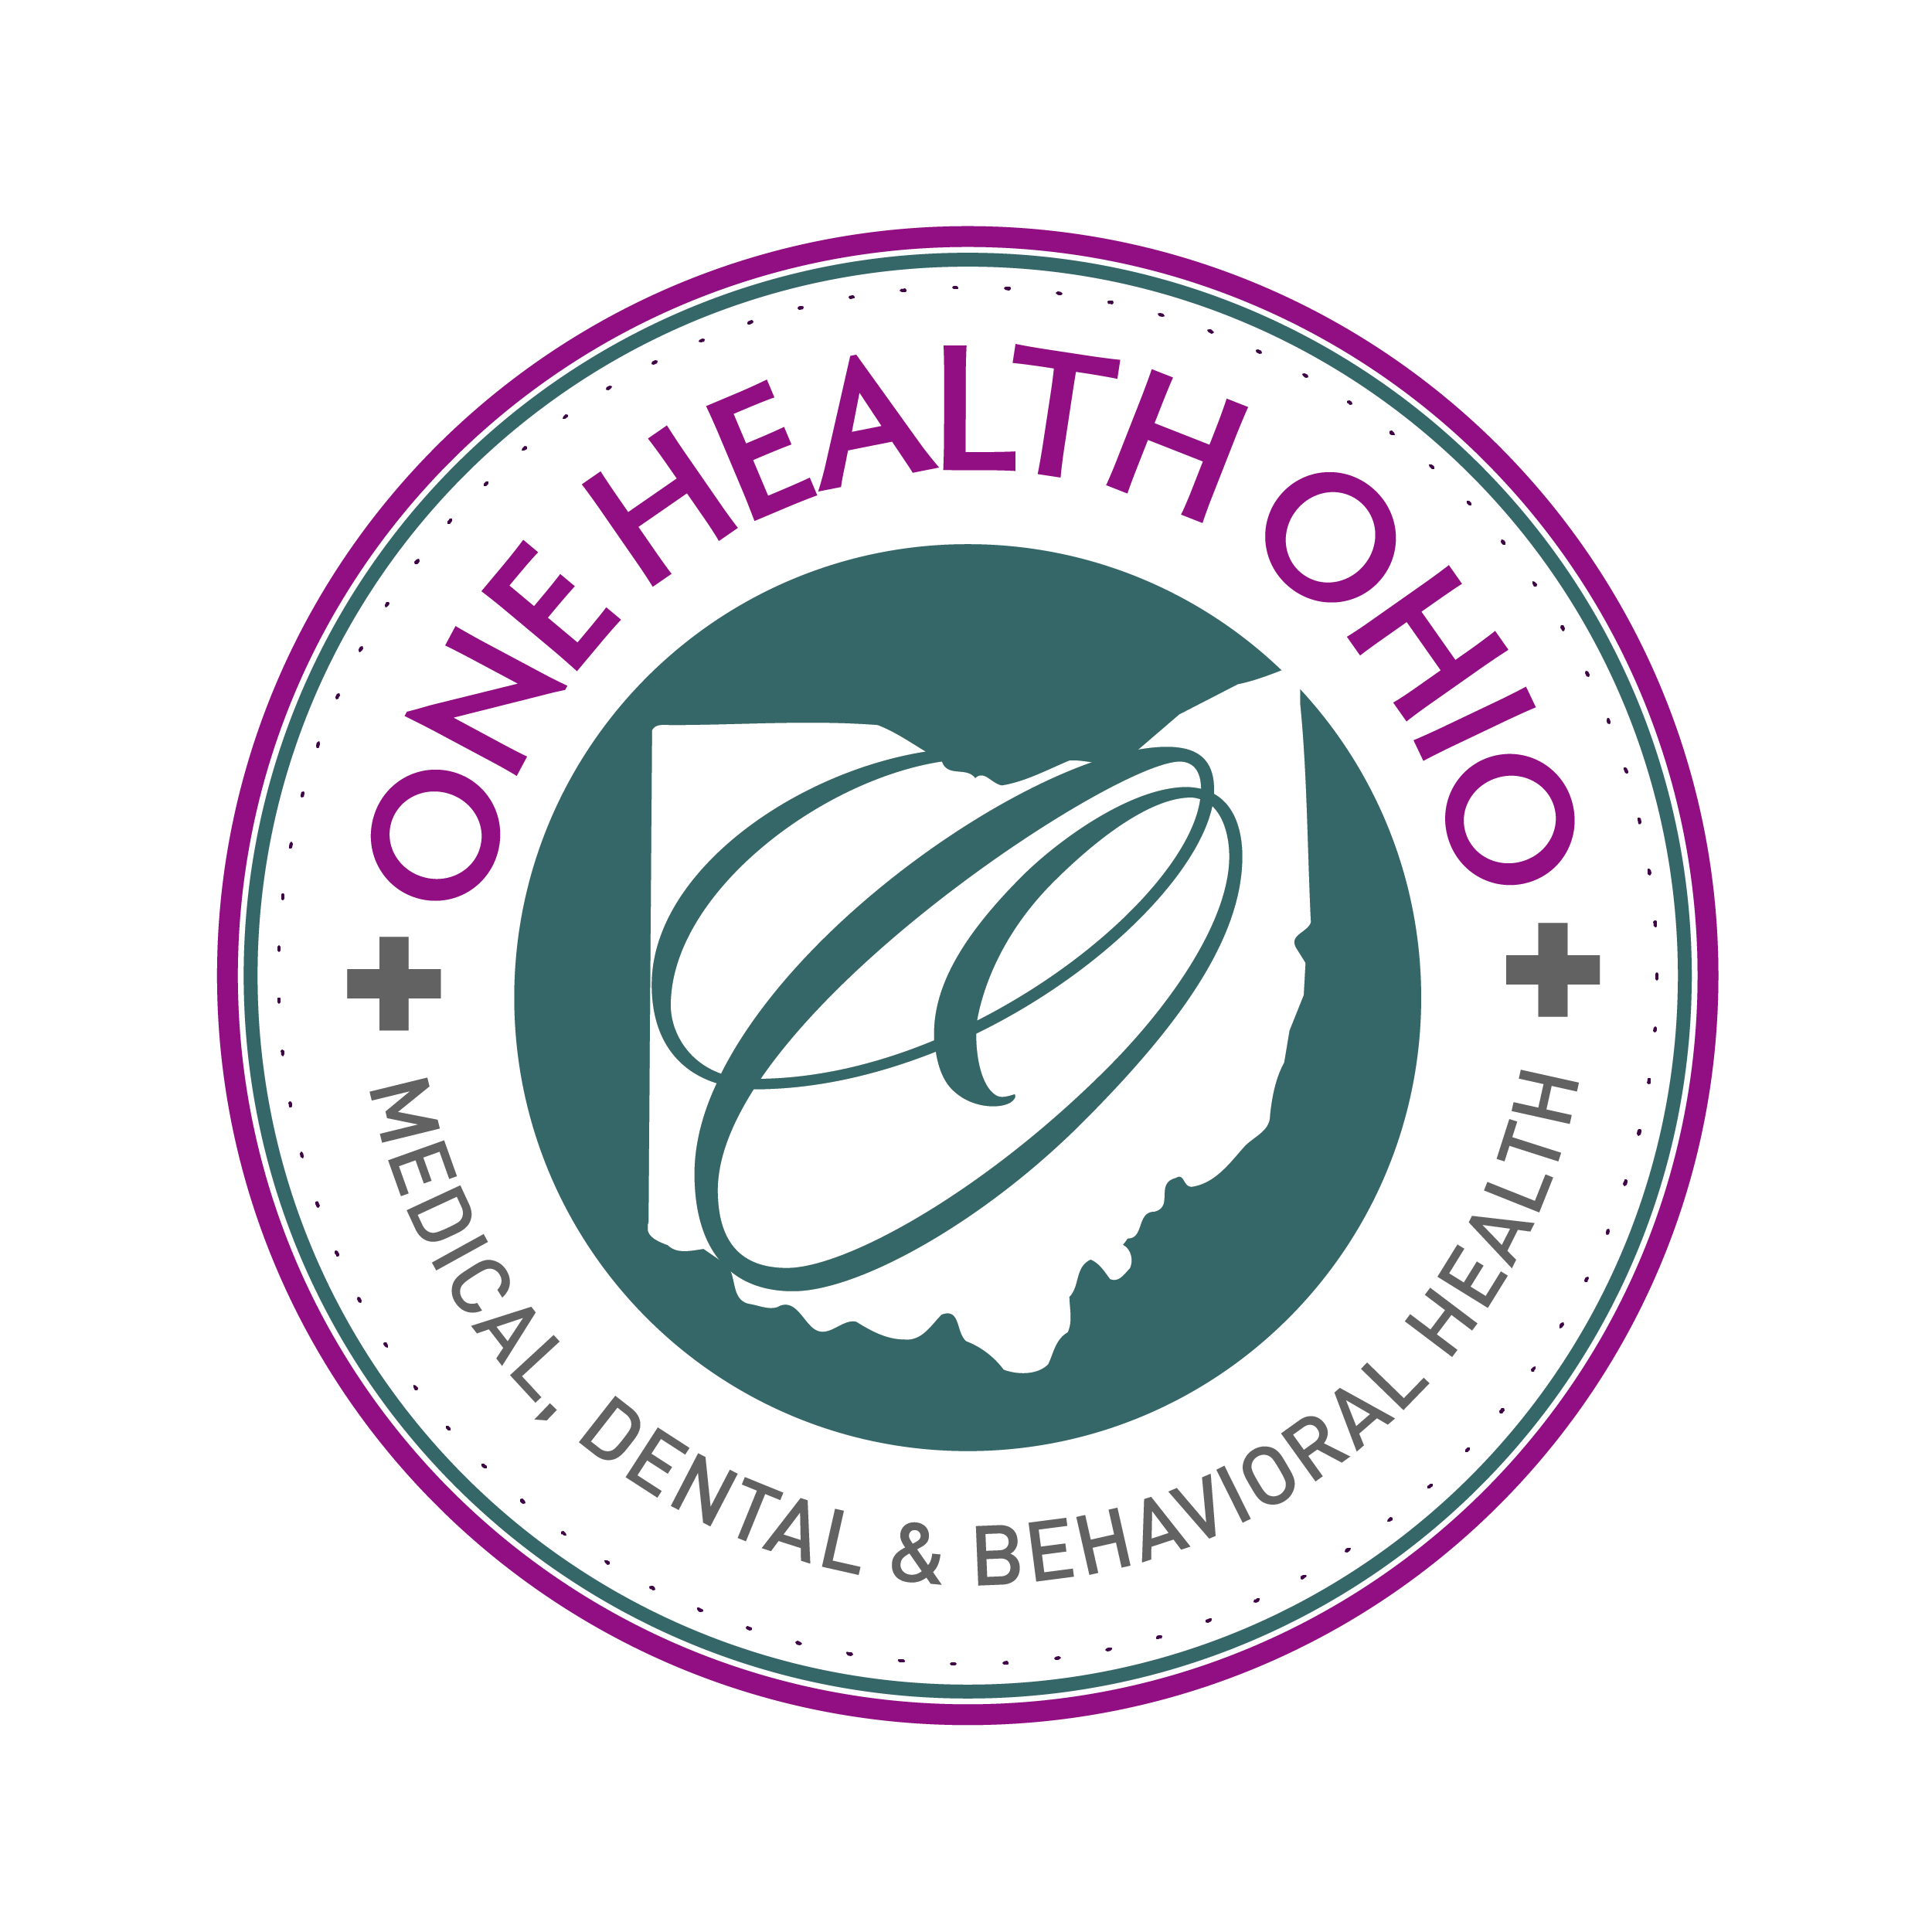 ONE Health Ohio